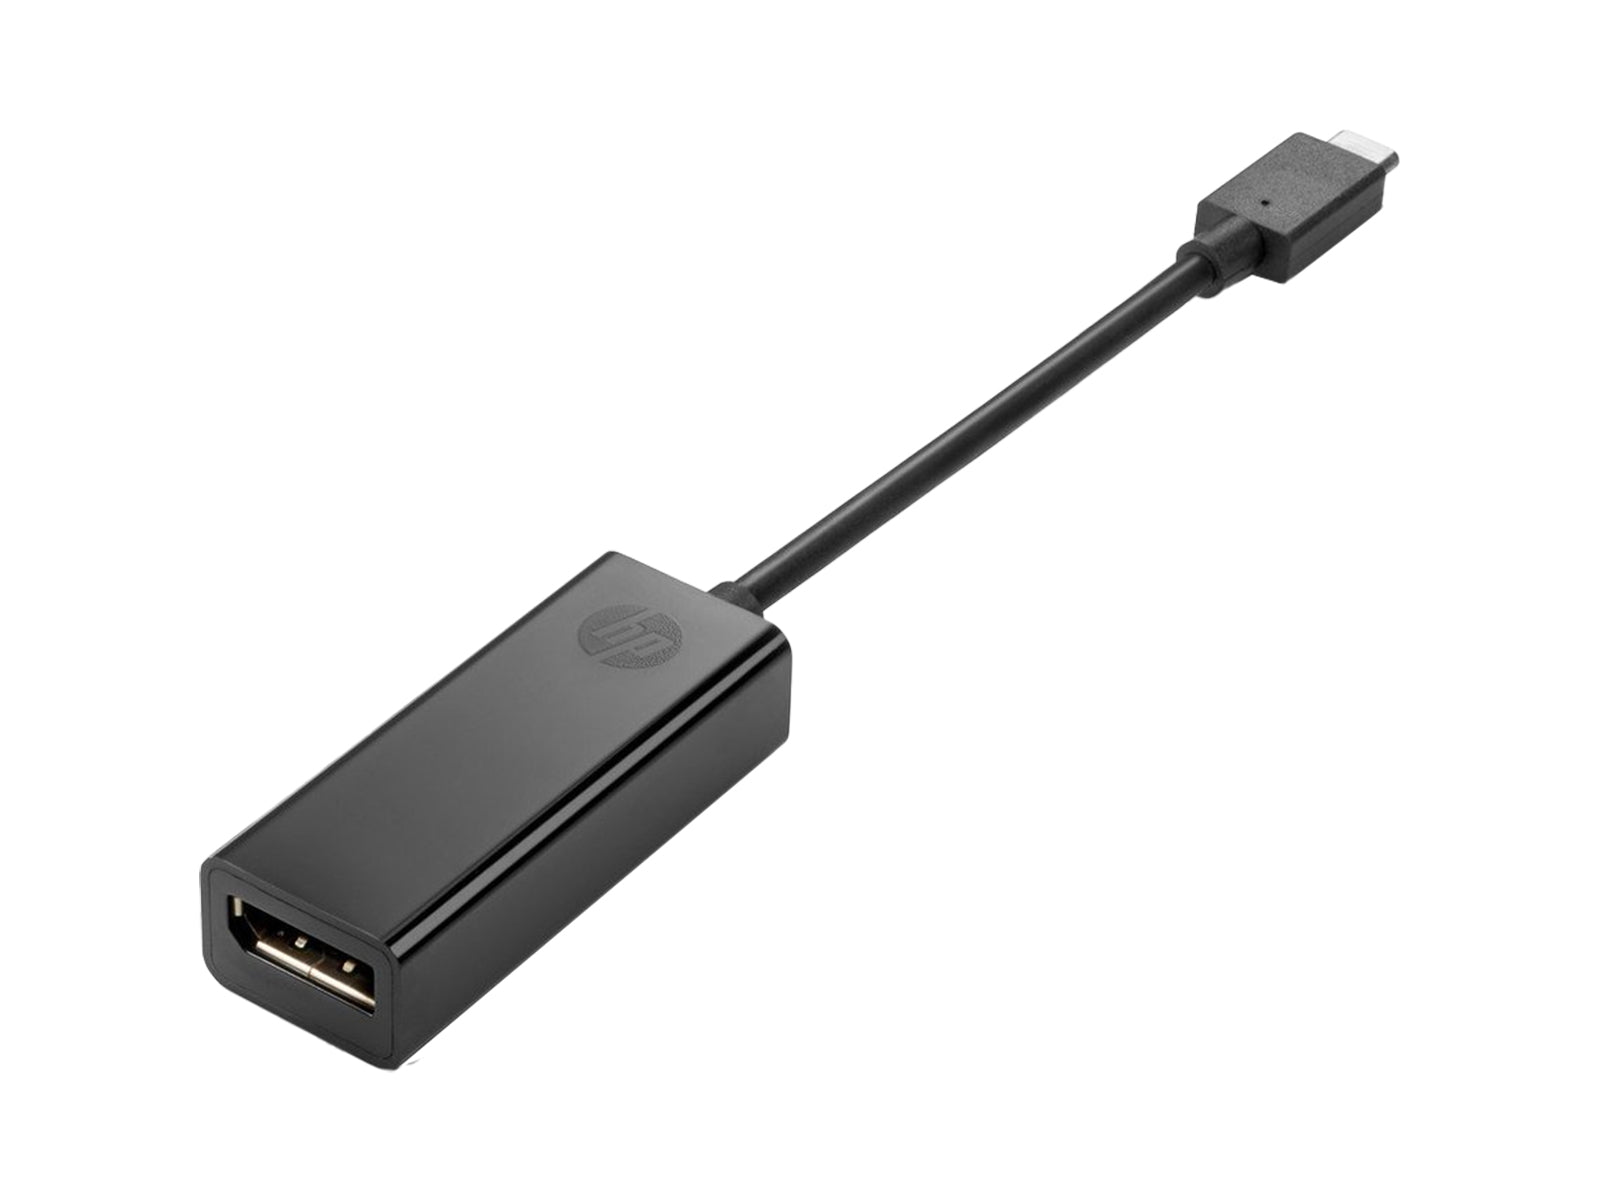 Convertisseur d'adaptateur de signal vidéo HP USB Type-C vers DisplayPort (831119-001) Monitors.com